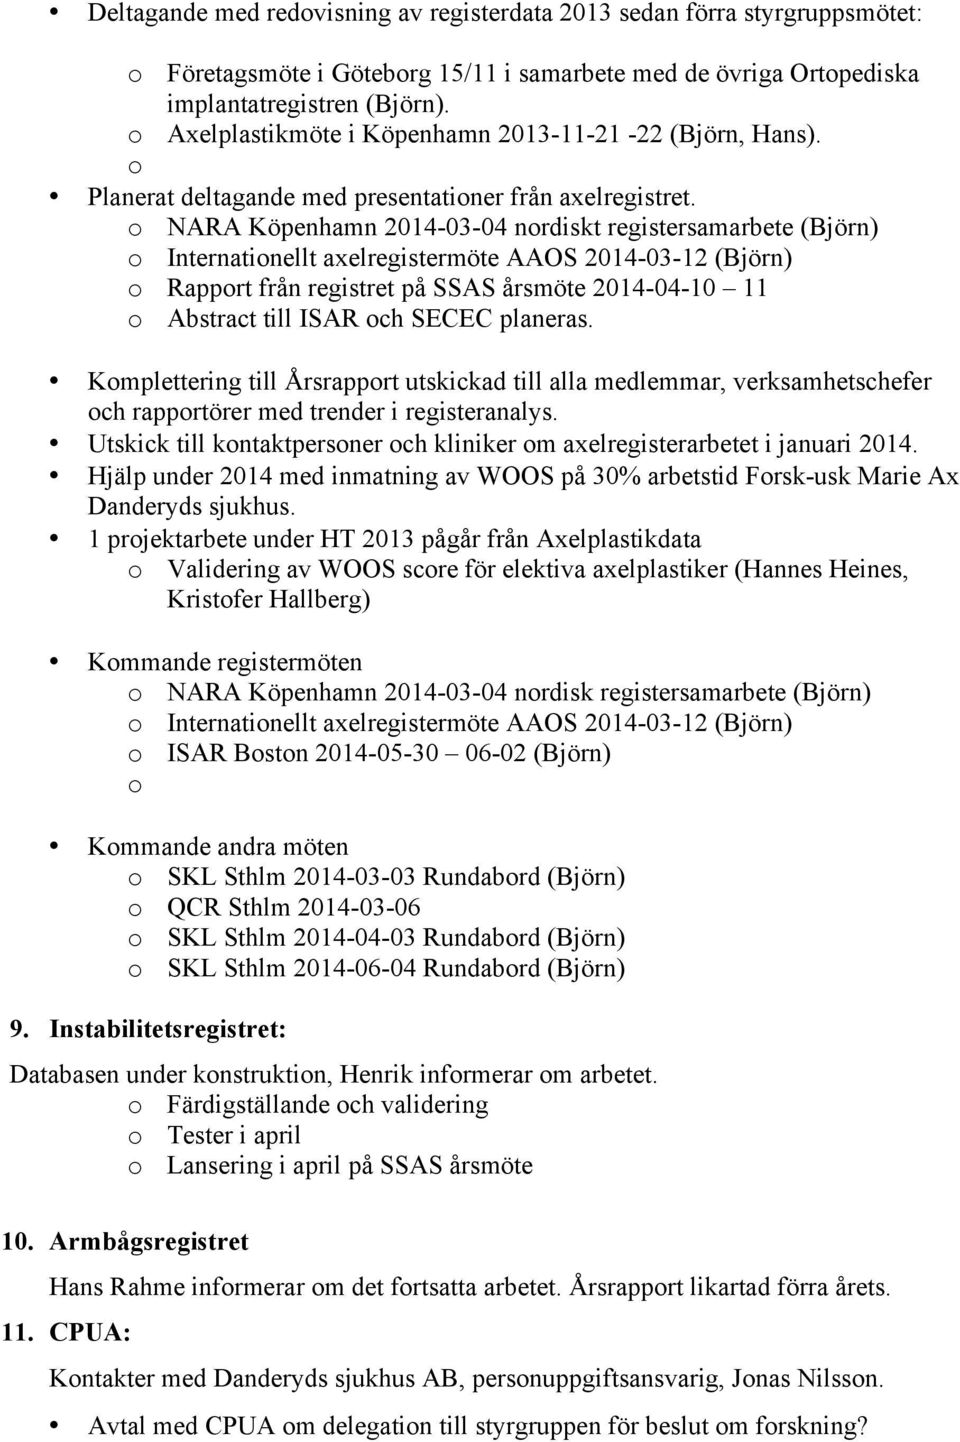 o NARA Köpenhamn 2014-03-04 nordiskt registersamarbete (Björn) o Internationellt axelregistermöte AAOS 2014-03-12 (Björn) o Rapport från registret på SSAS årsmöte 2014-04-10 11 o Abstract till ISAR